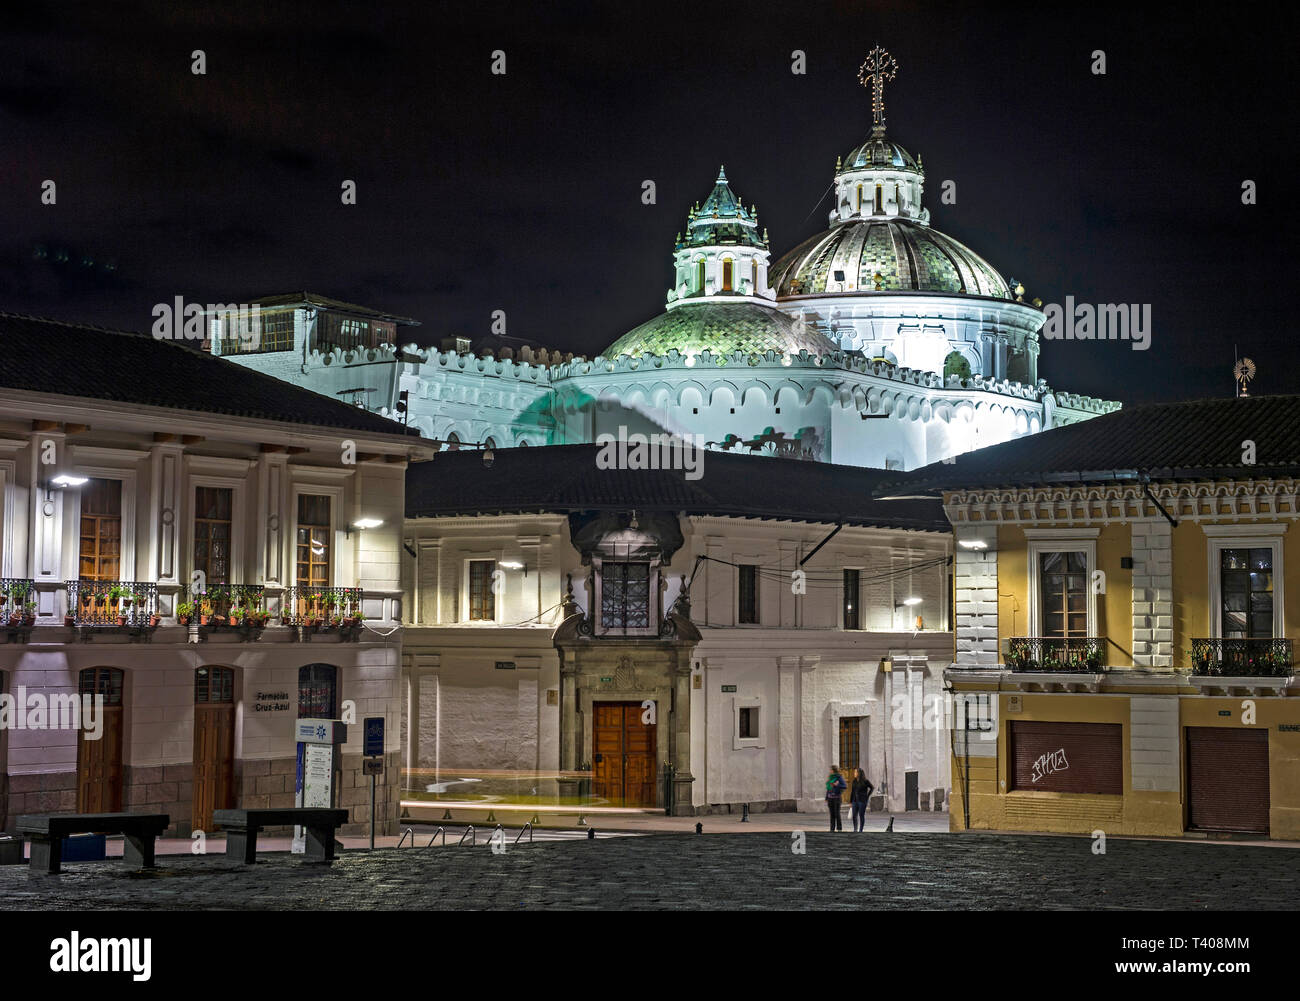 Vieille ville historique de Quito par nuit, avec l'allumé coupoles de l'église des Jésuites La Compañia de Jesús en arrière-plan, l'Équateur Banque D'Images